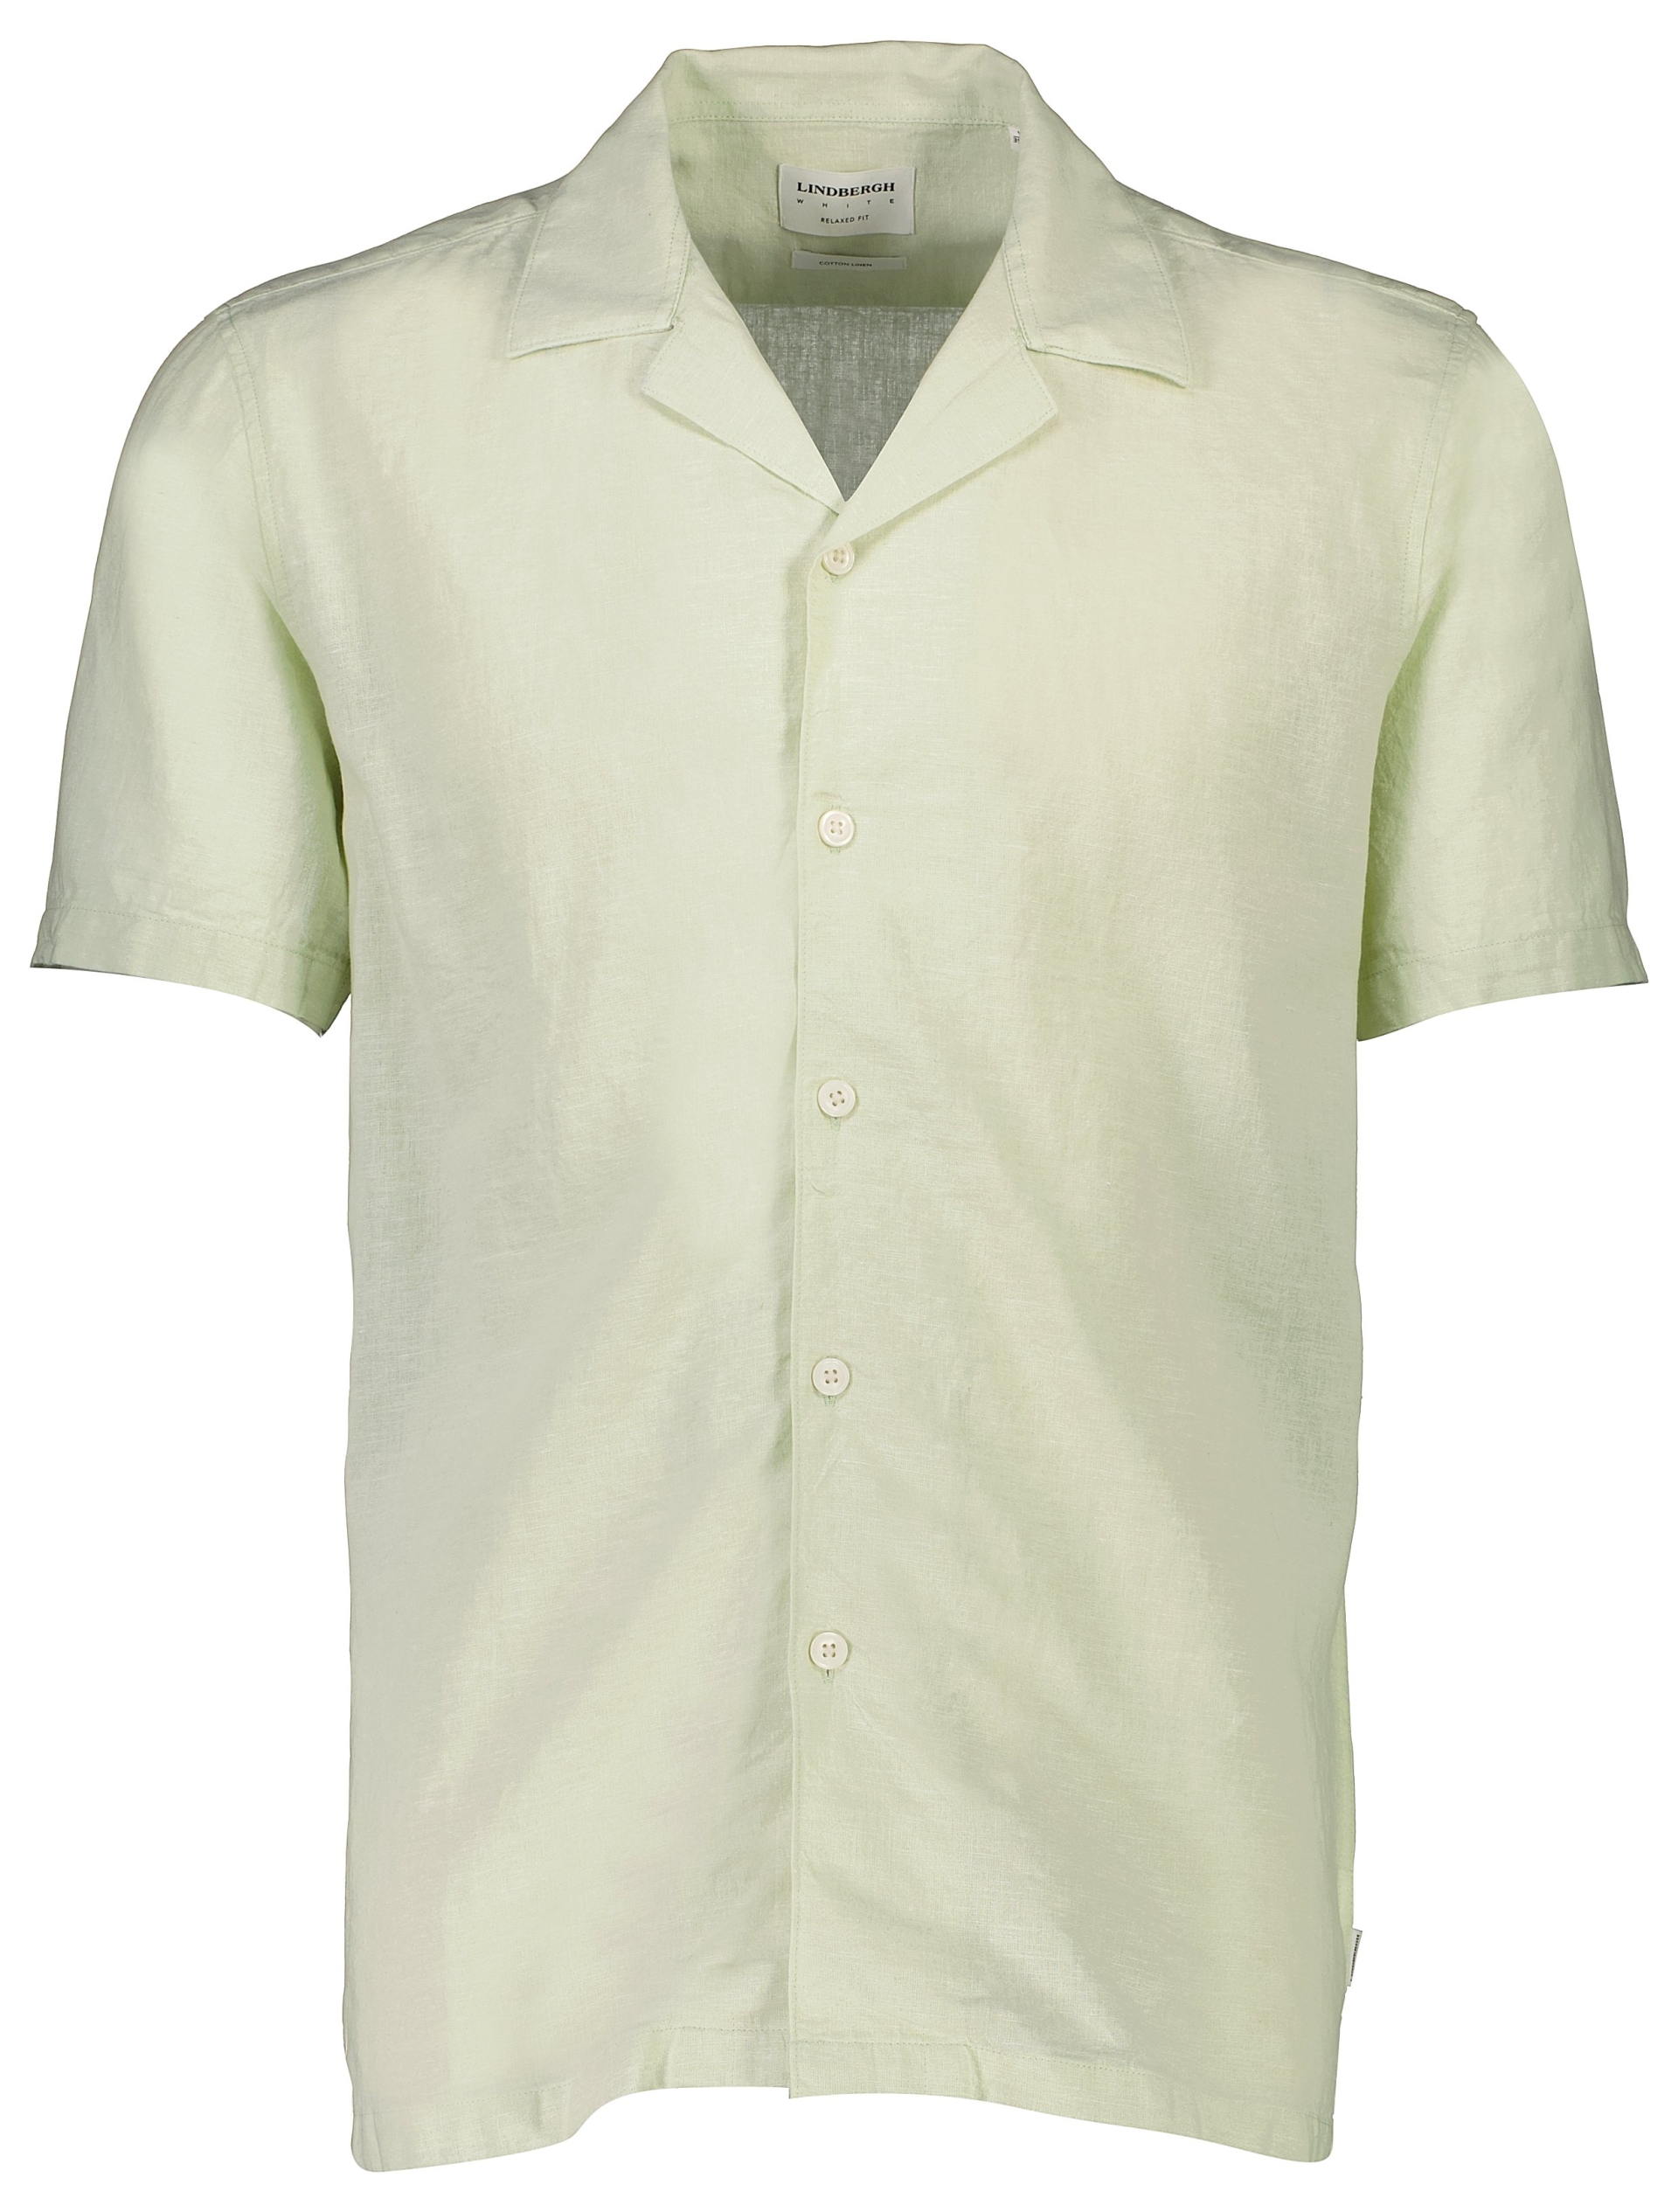 Lindbergh Linen shirt green / mint